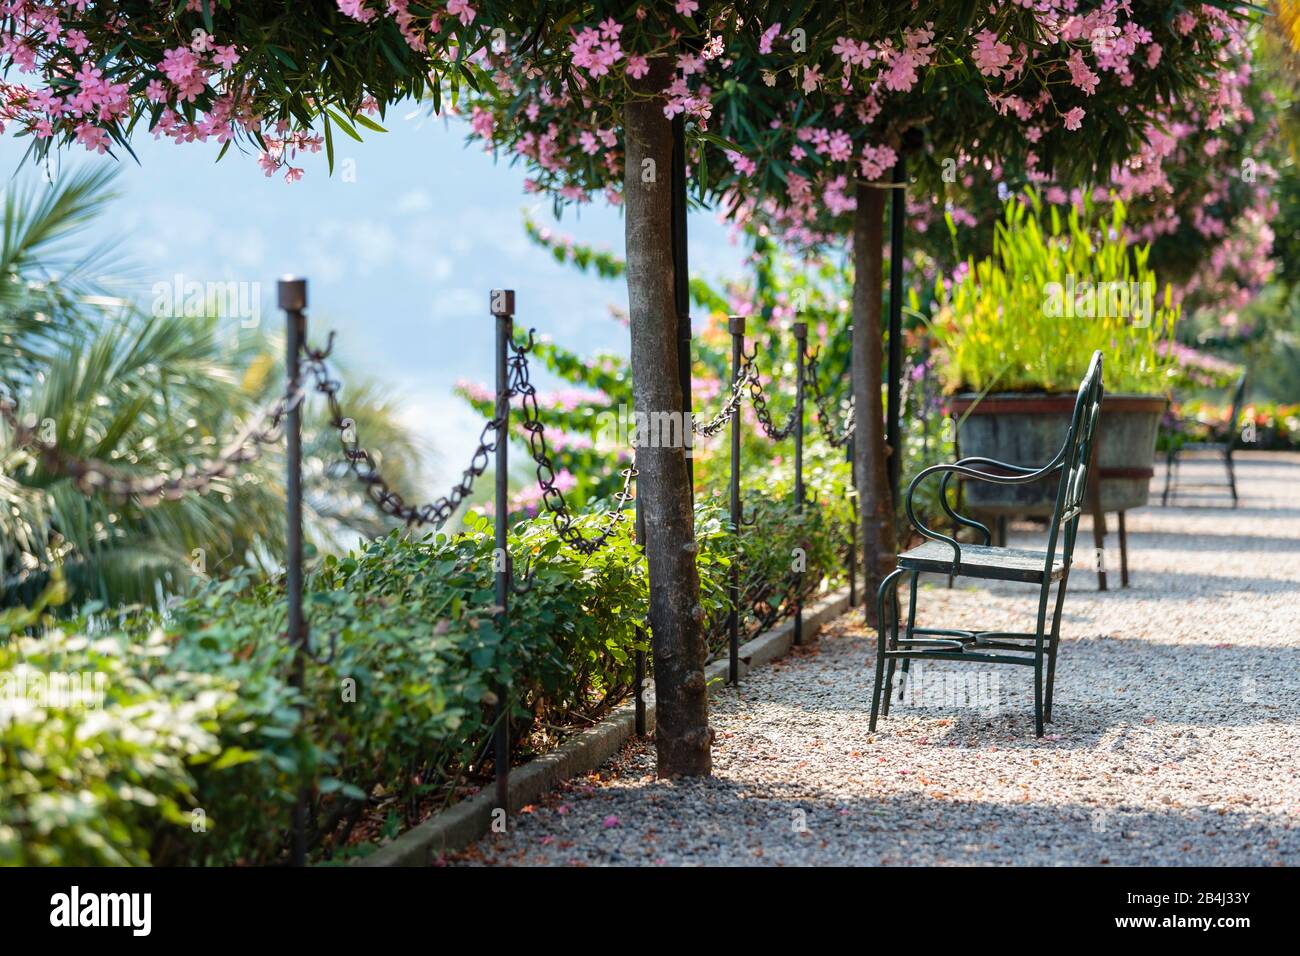 Europa, Italien, Piemont, Verbania. Die zu den Bäumen gezogenen Oleader (Nerium oleander) vor dem Pallazo Borromeo. Stockfoto